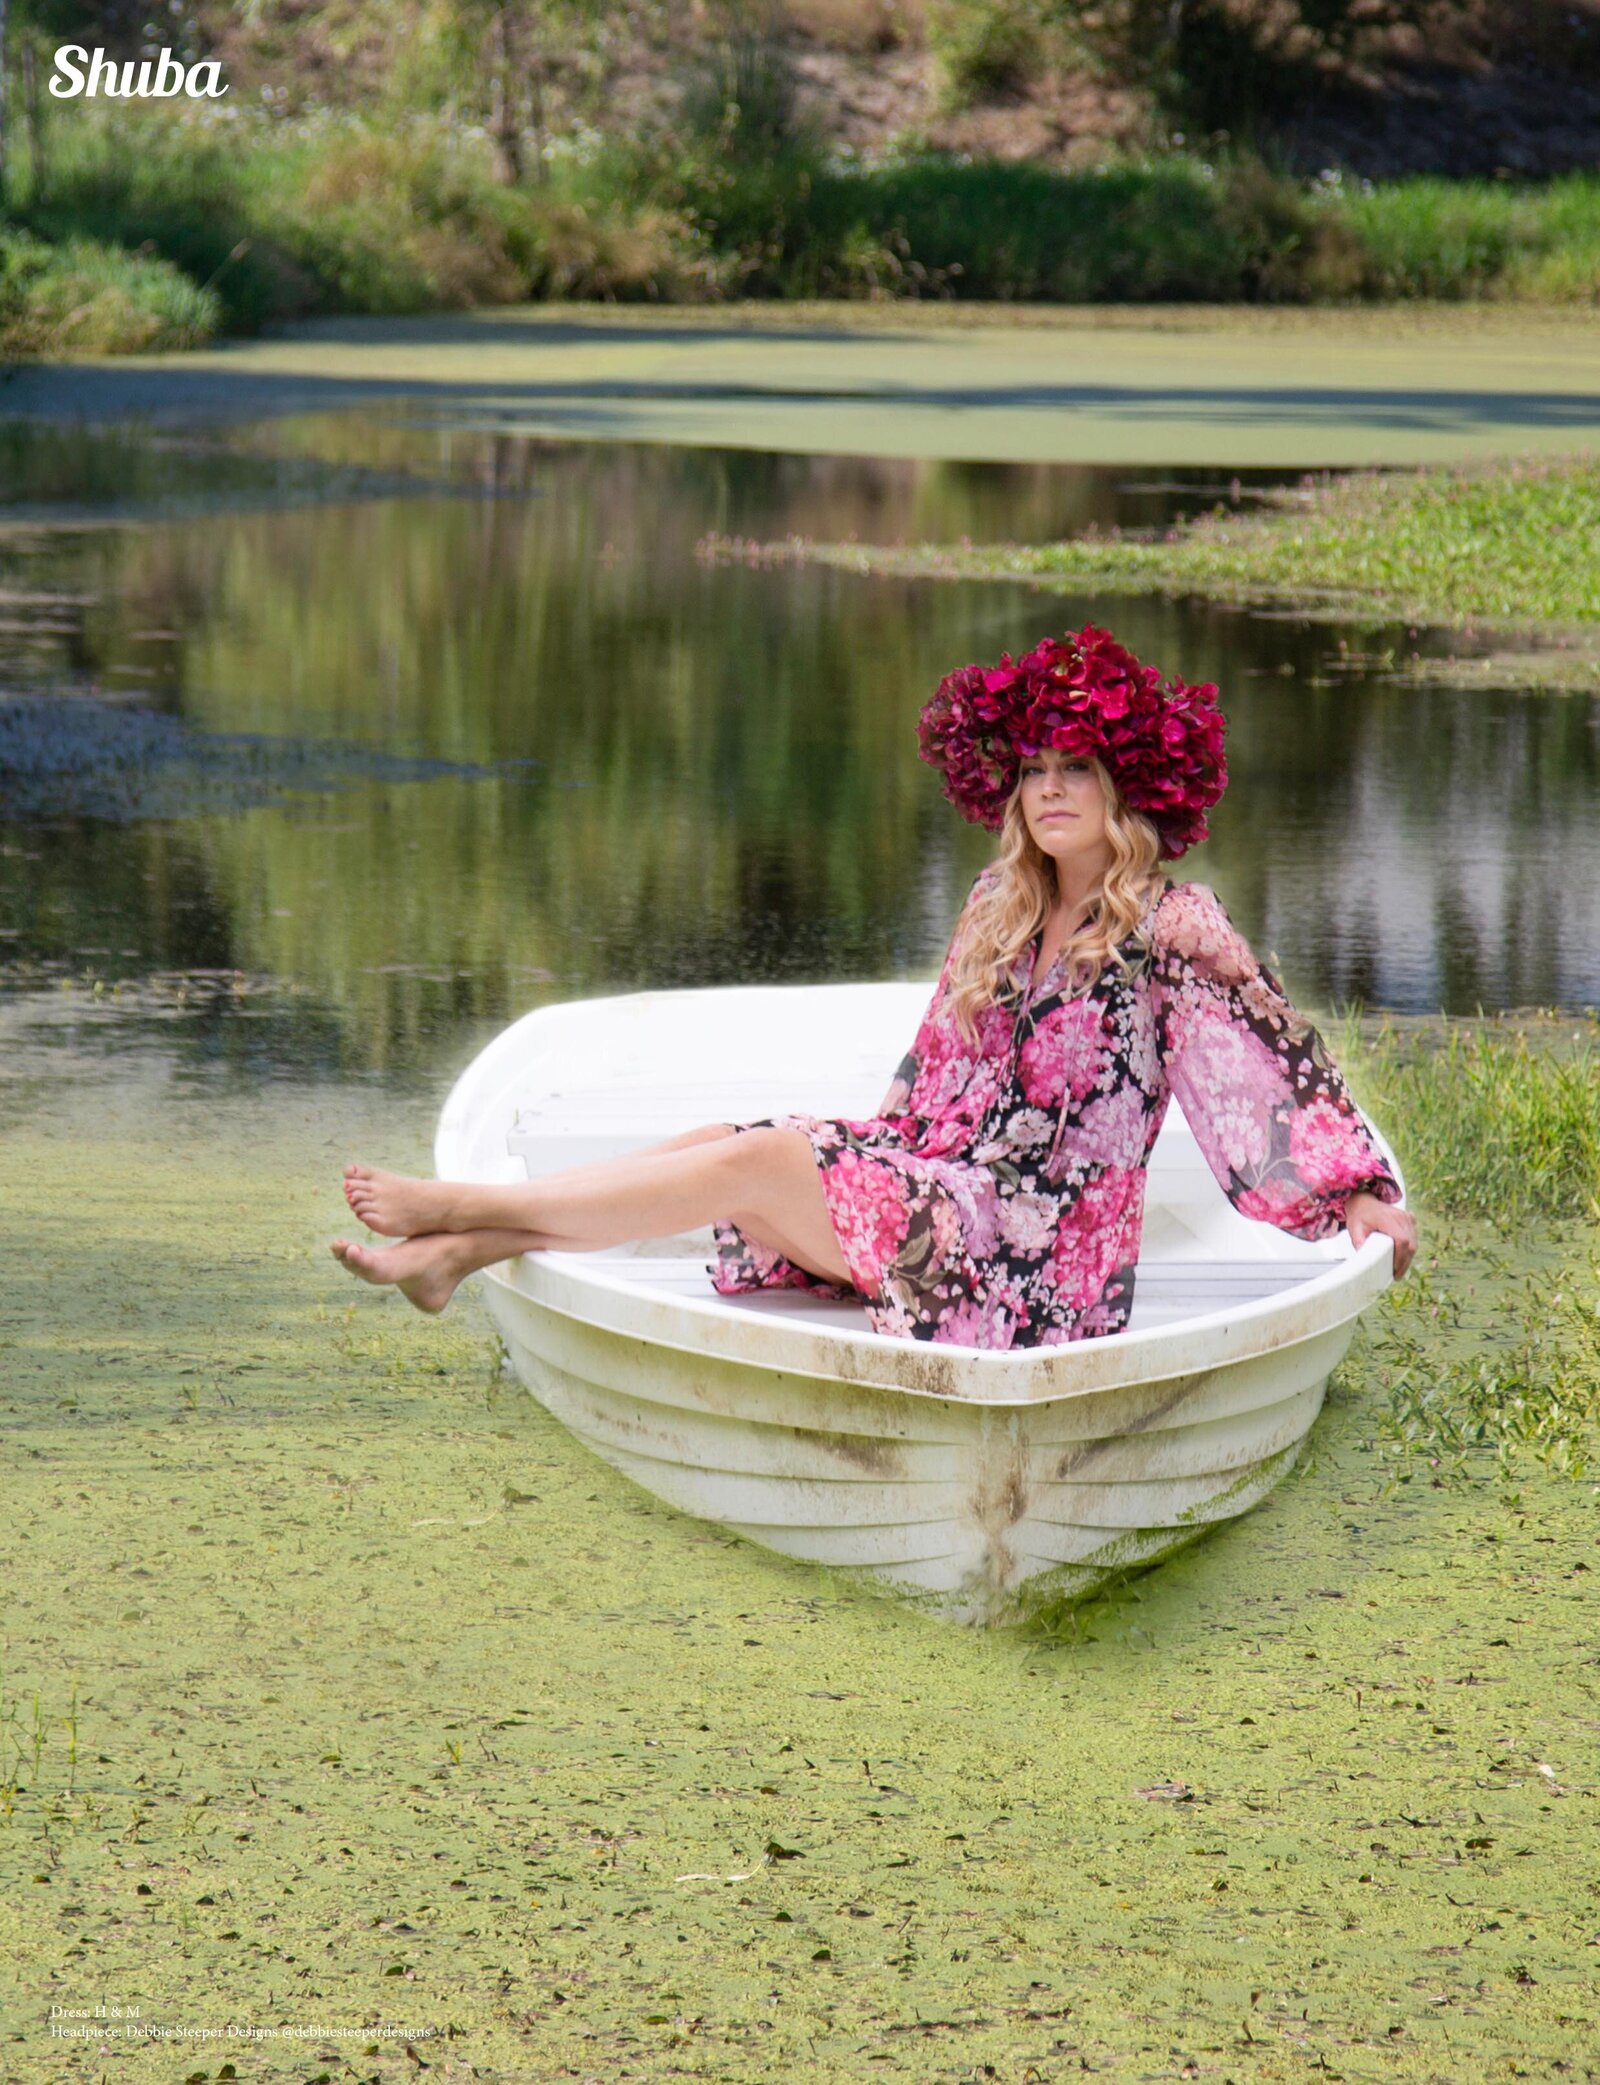 shuba magazine-girl -boat-pond-debbiesteeper